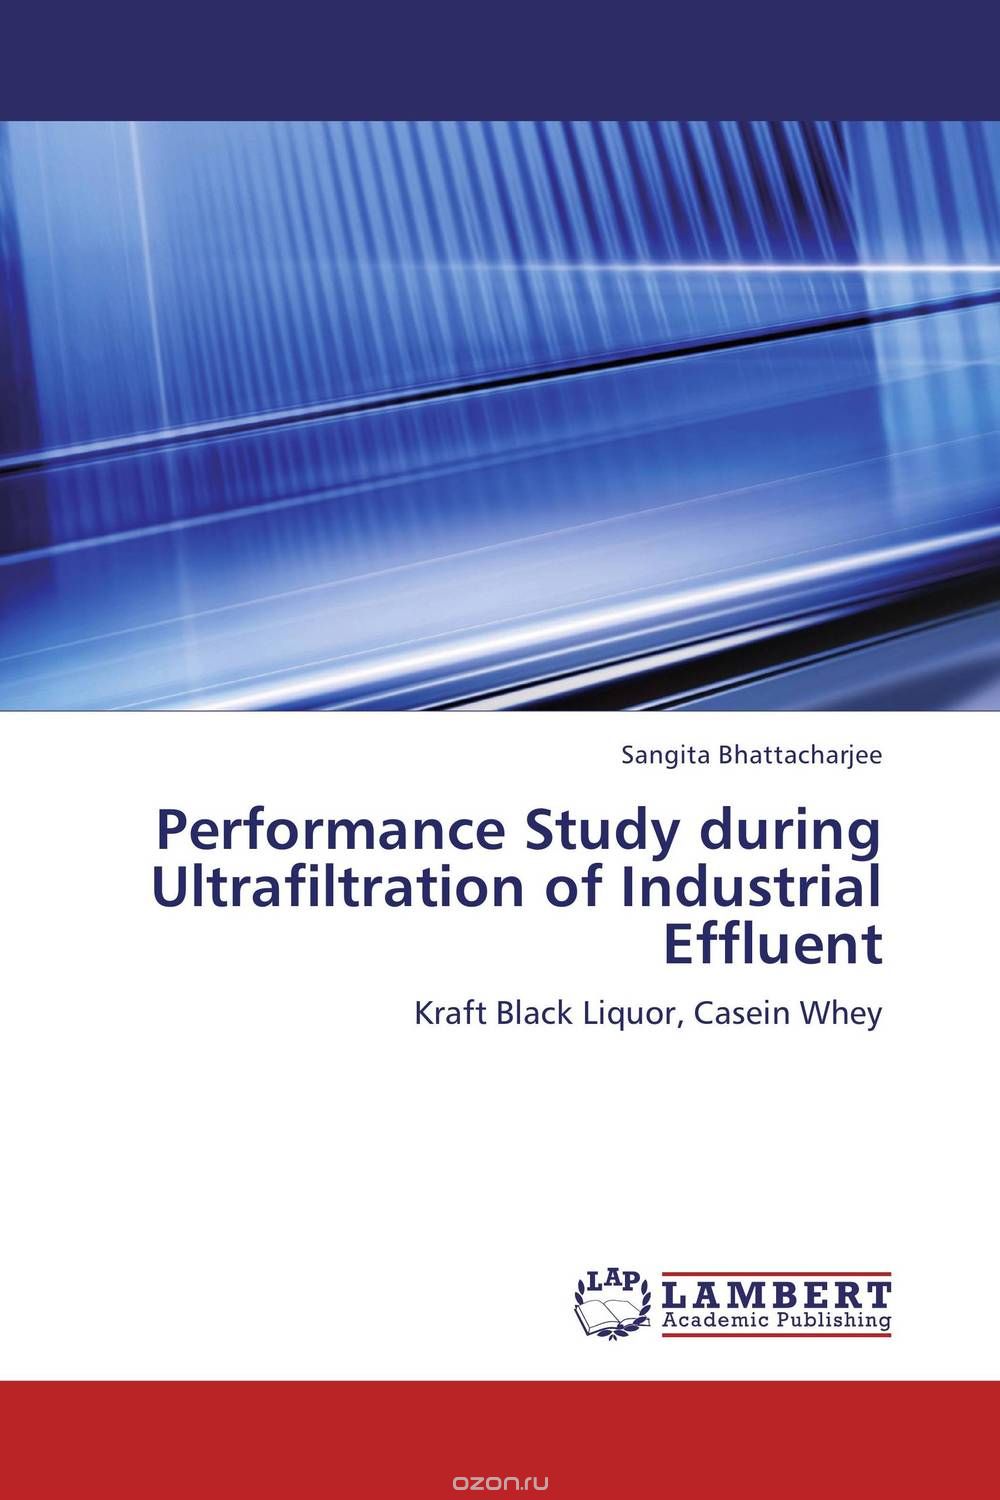 Скачать книгу "Performance Study during Ultrafiltration of Industrial Effluent"